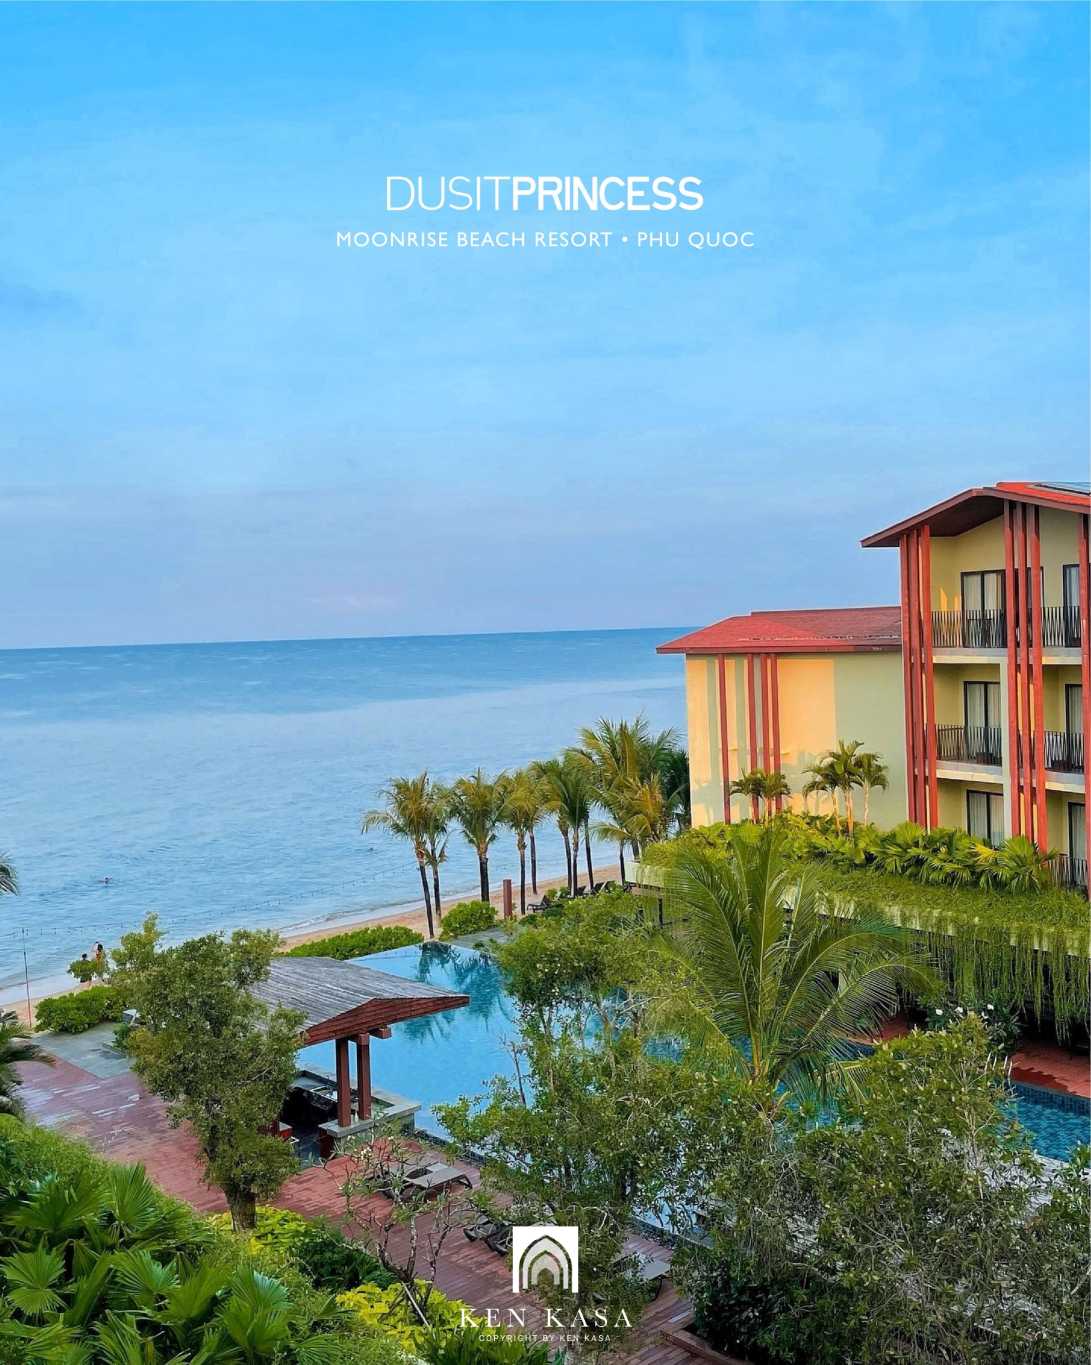 Phong cách thiết kế của Dusit Princess Moonrise Beach Resort